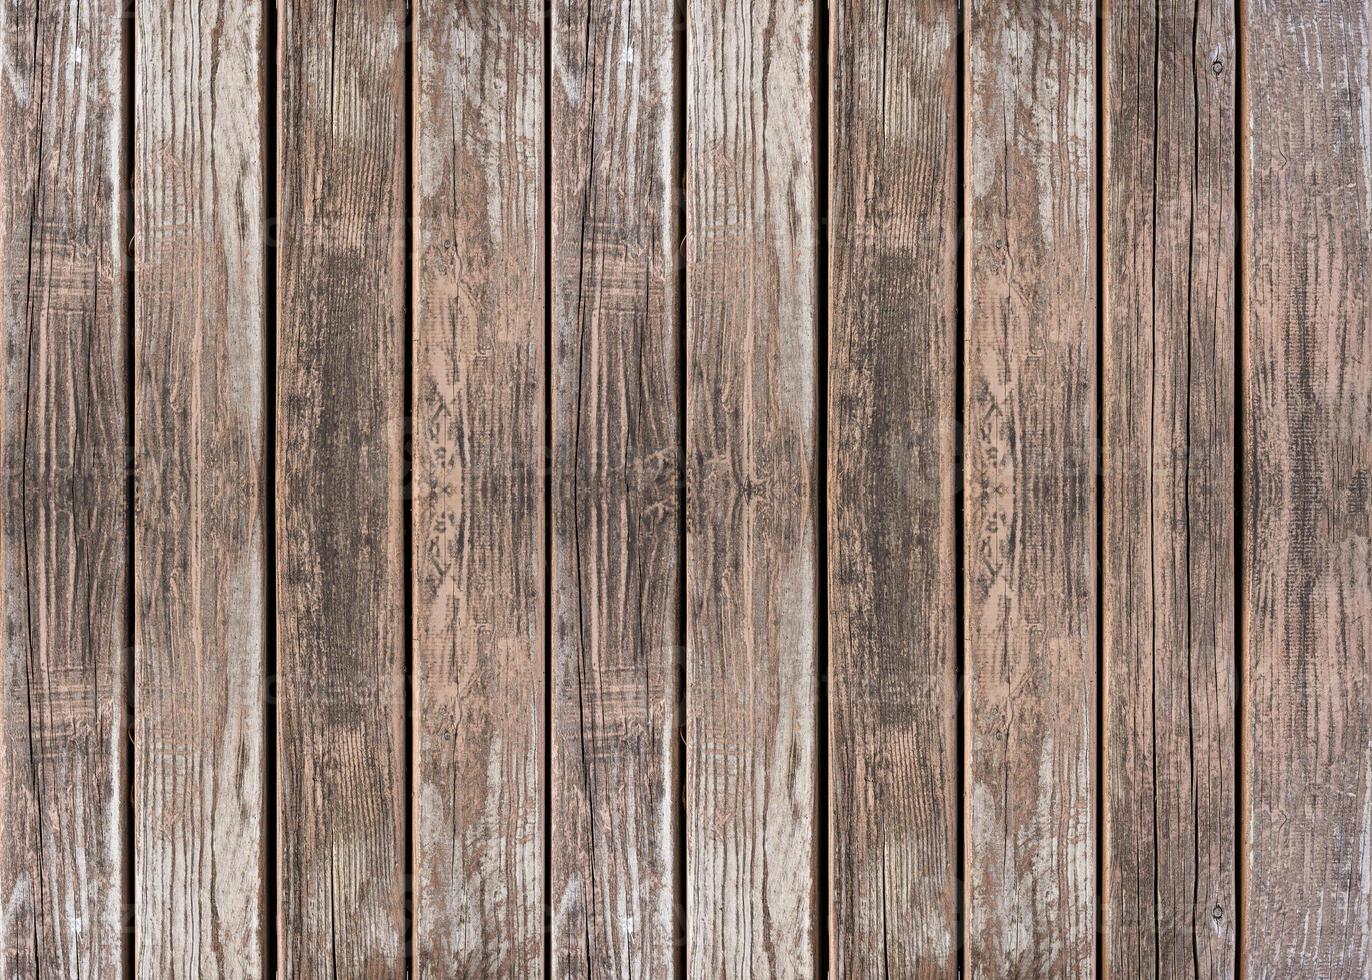 fond de texture de planche de bois marron photo